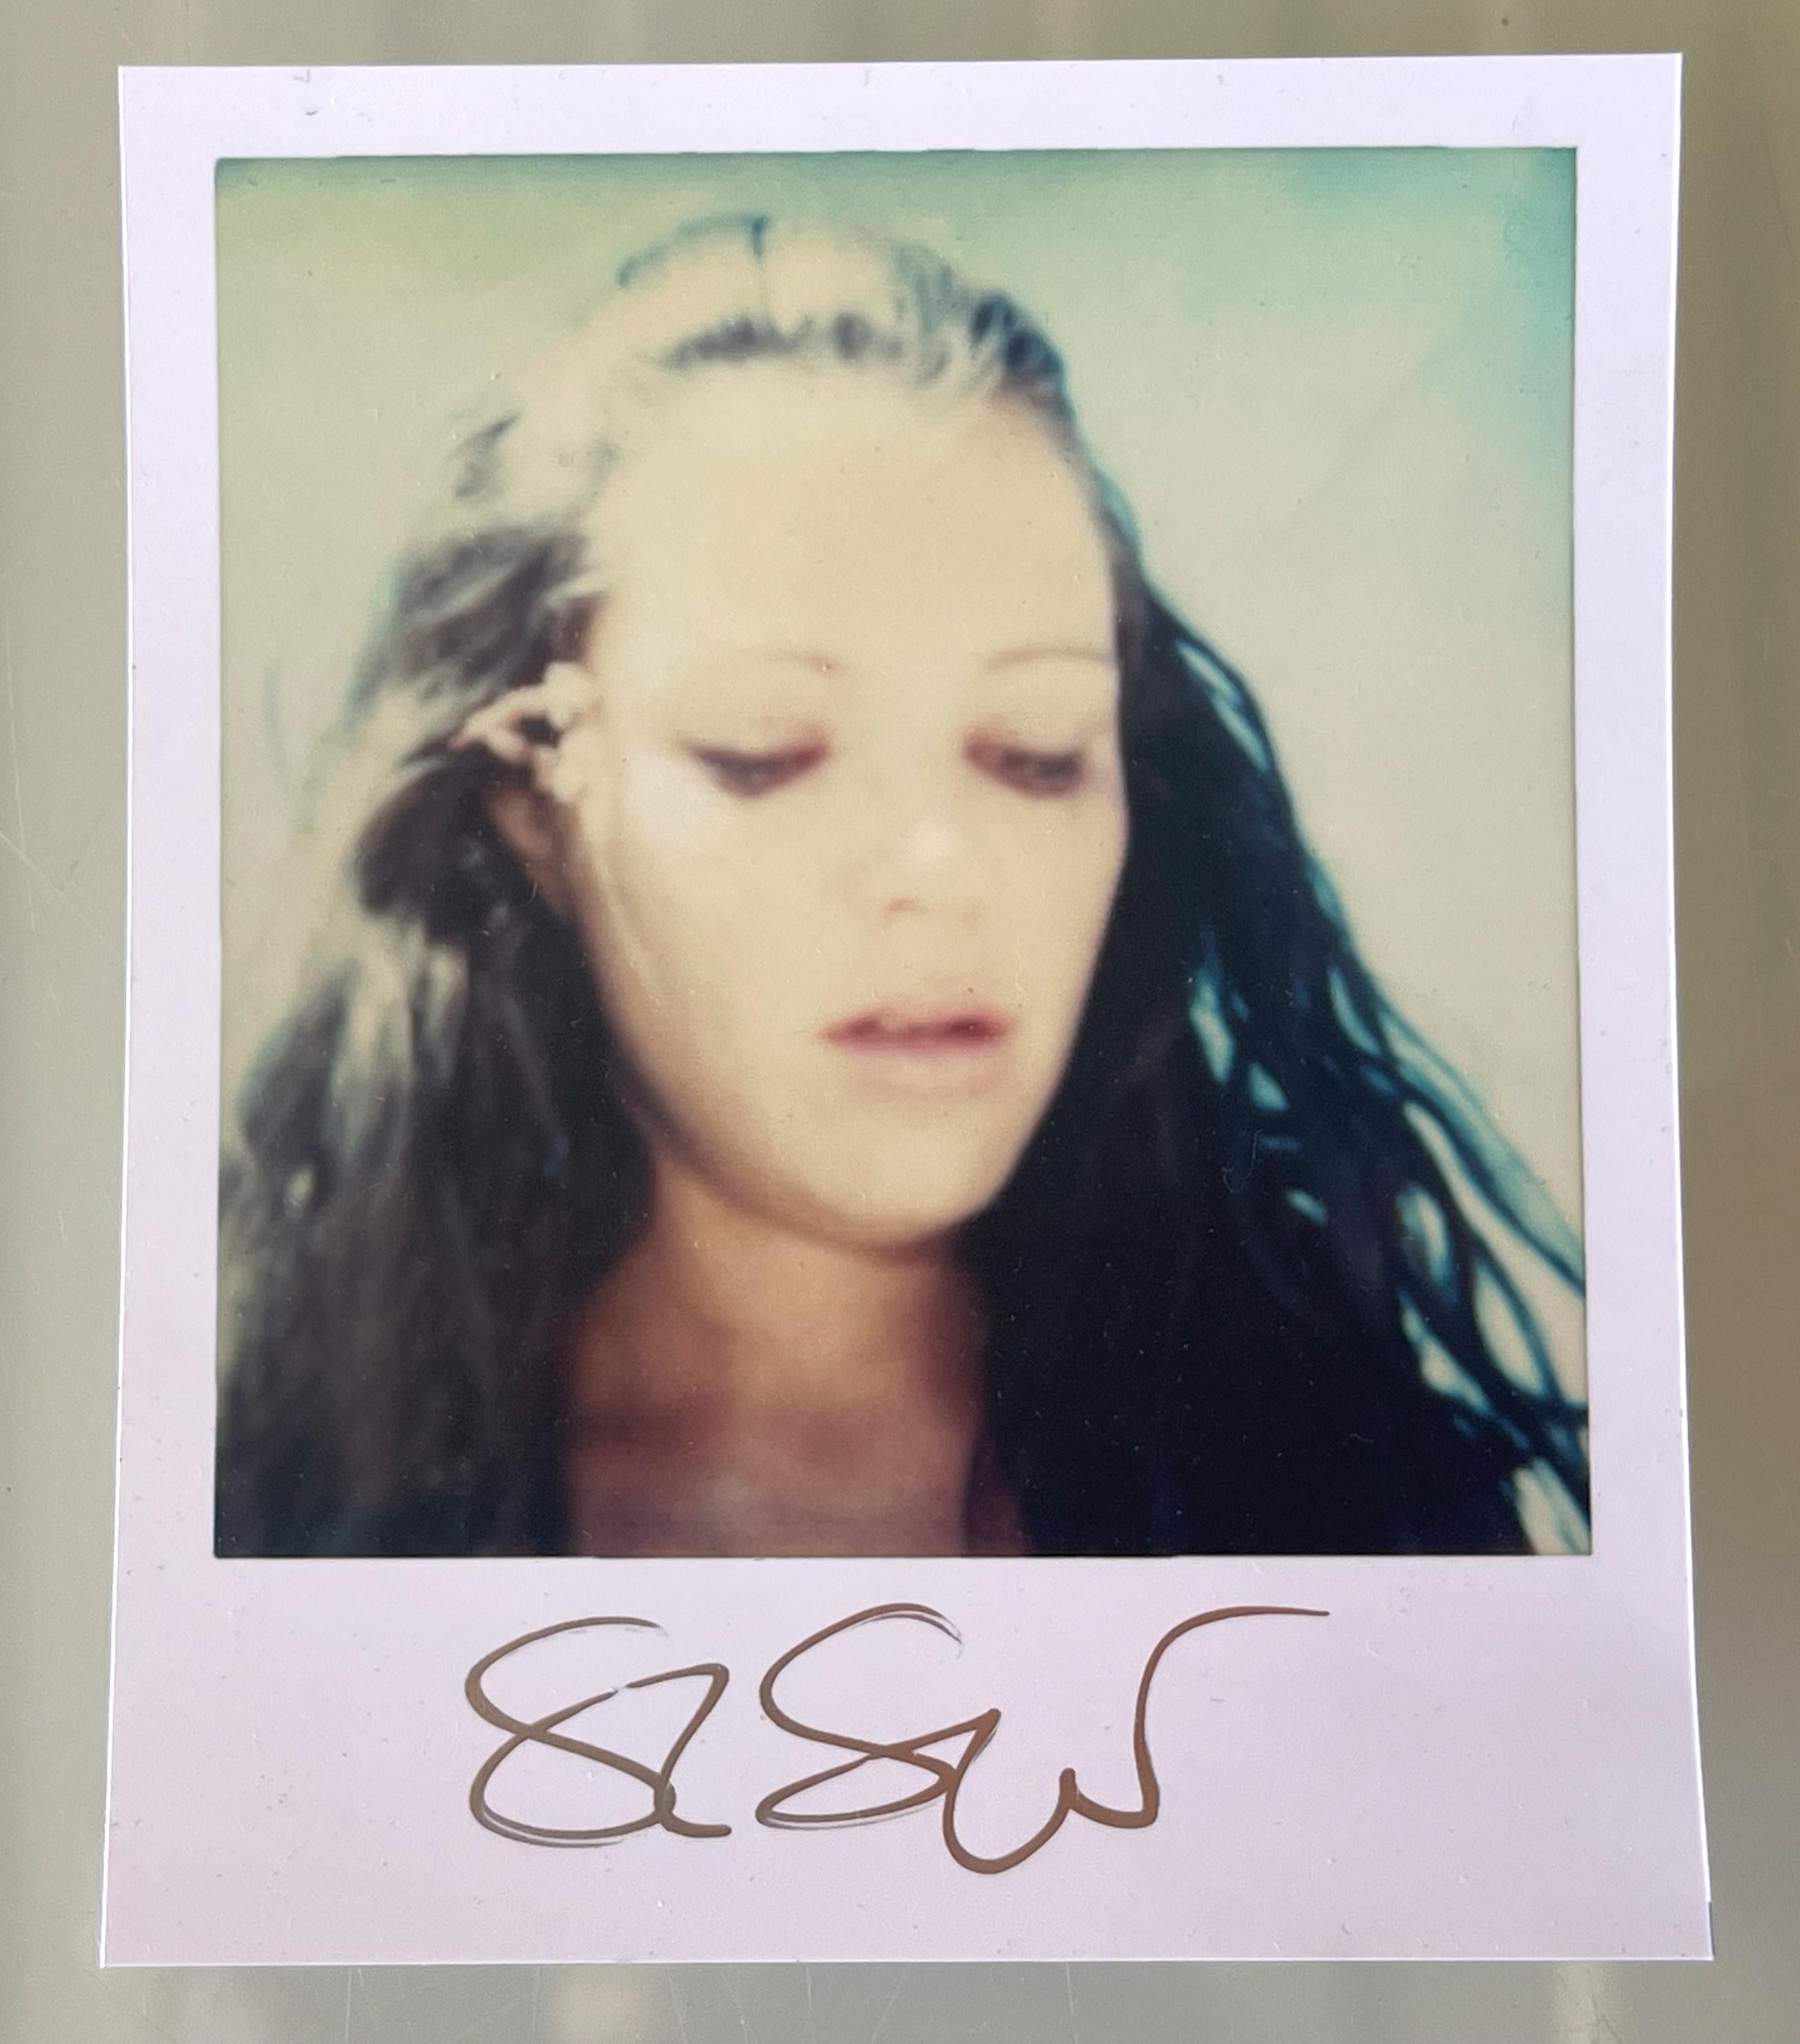 Stefanie Schneider Polaroid-Minis in Größe "Immaculate Springs" - signiert, lose